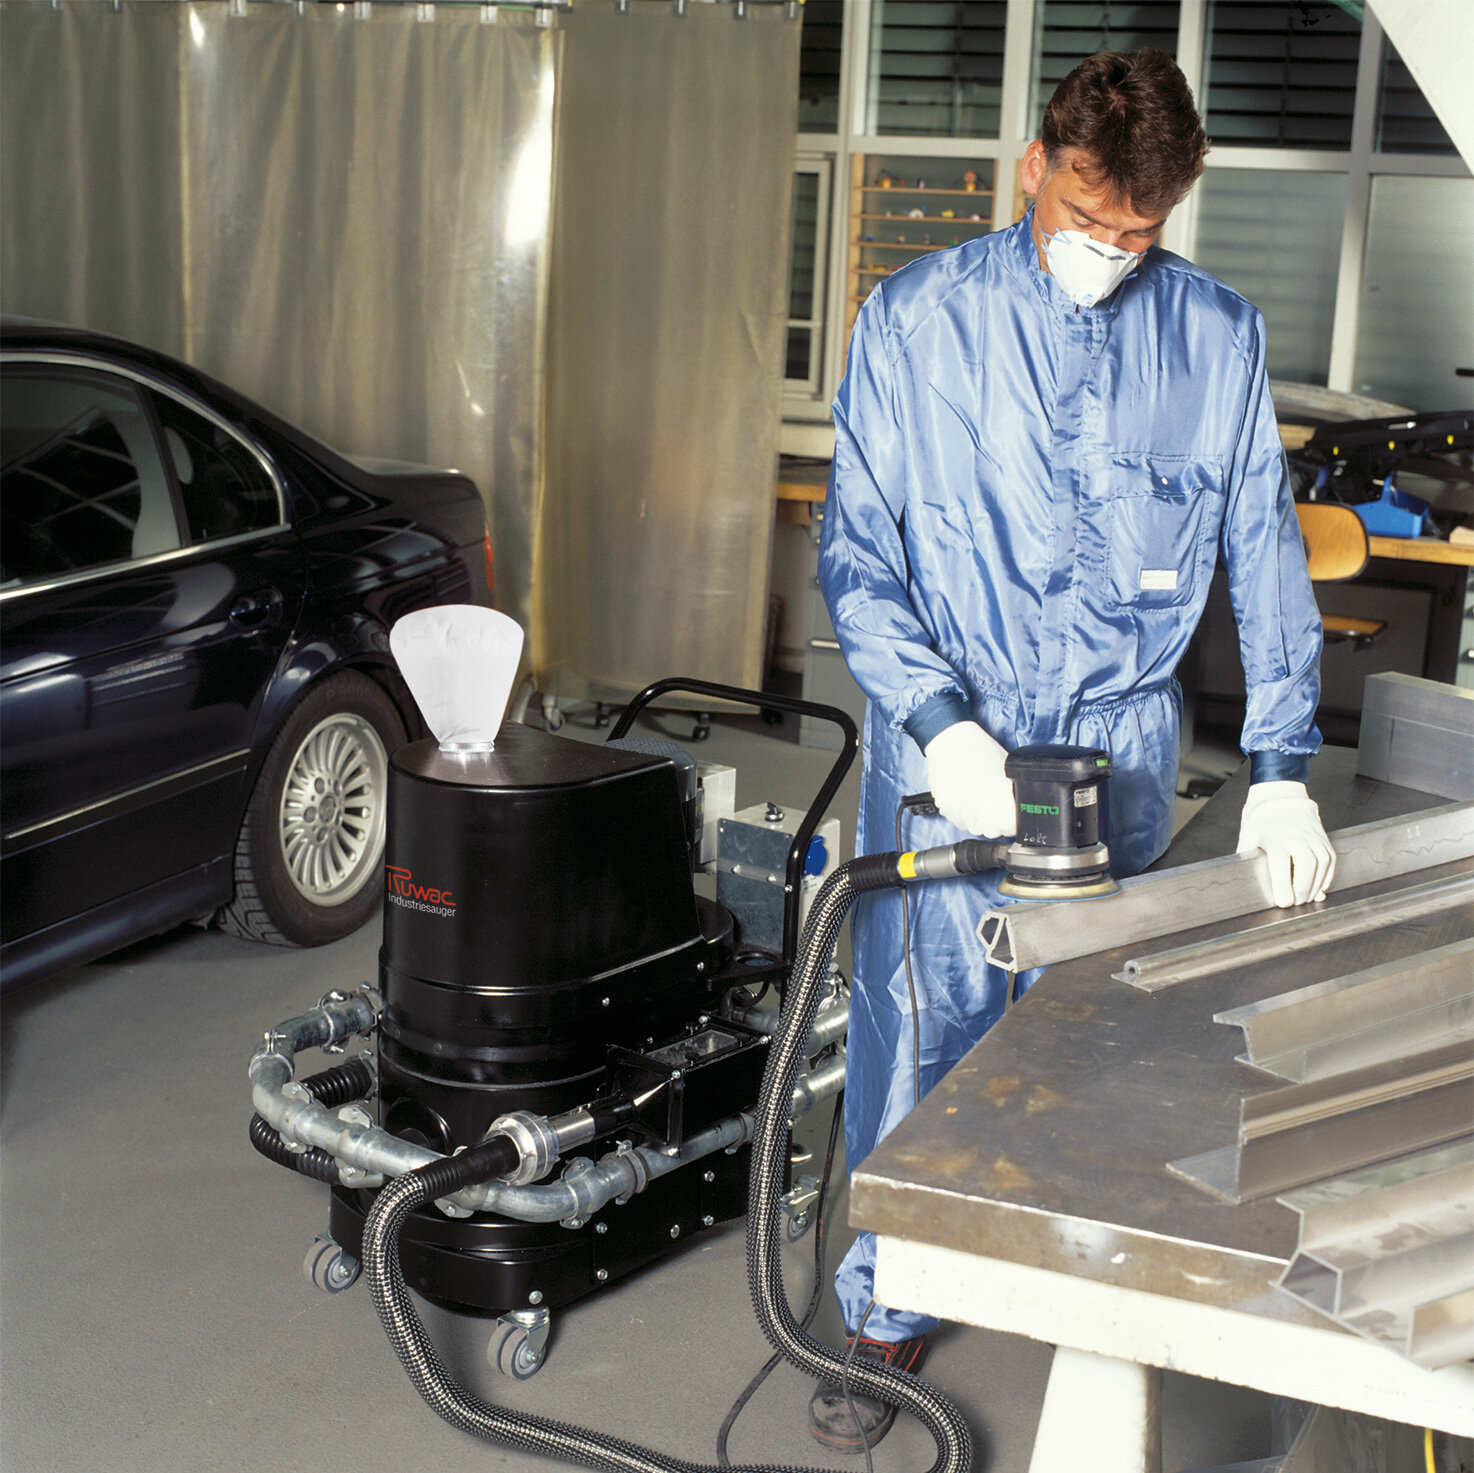 Průmyslový vysavač Ruwac R01 R022 s lapačem jisker v oblasti s nebezpečím výbuchu prachu vysává hořlavý hliníkový prach u společnosti BMW v Mnichově.